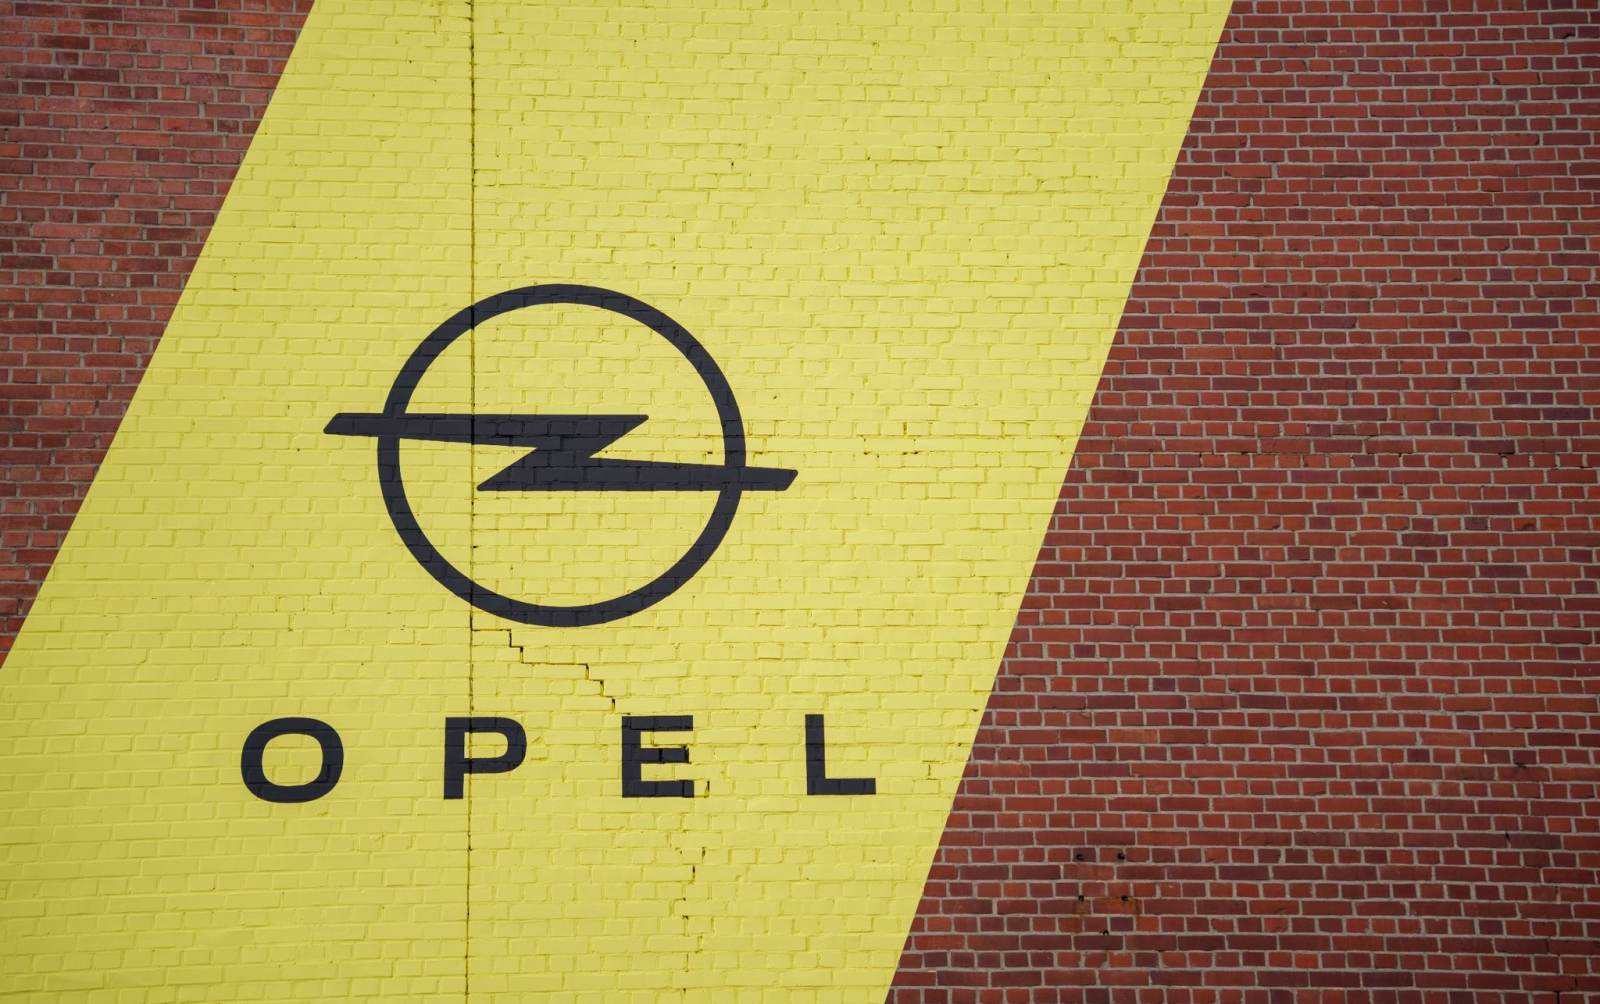 Das Opel-Logo ist zu sehen.